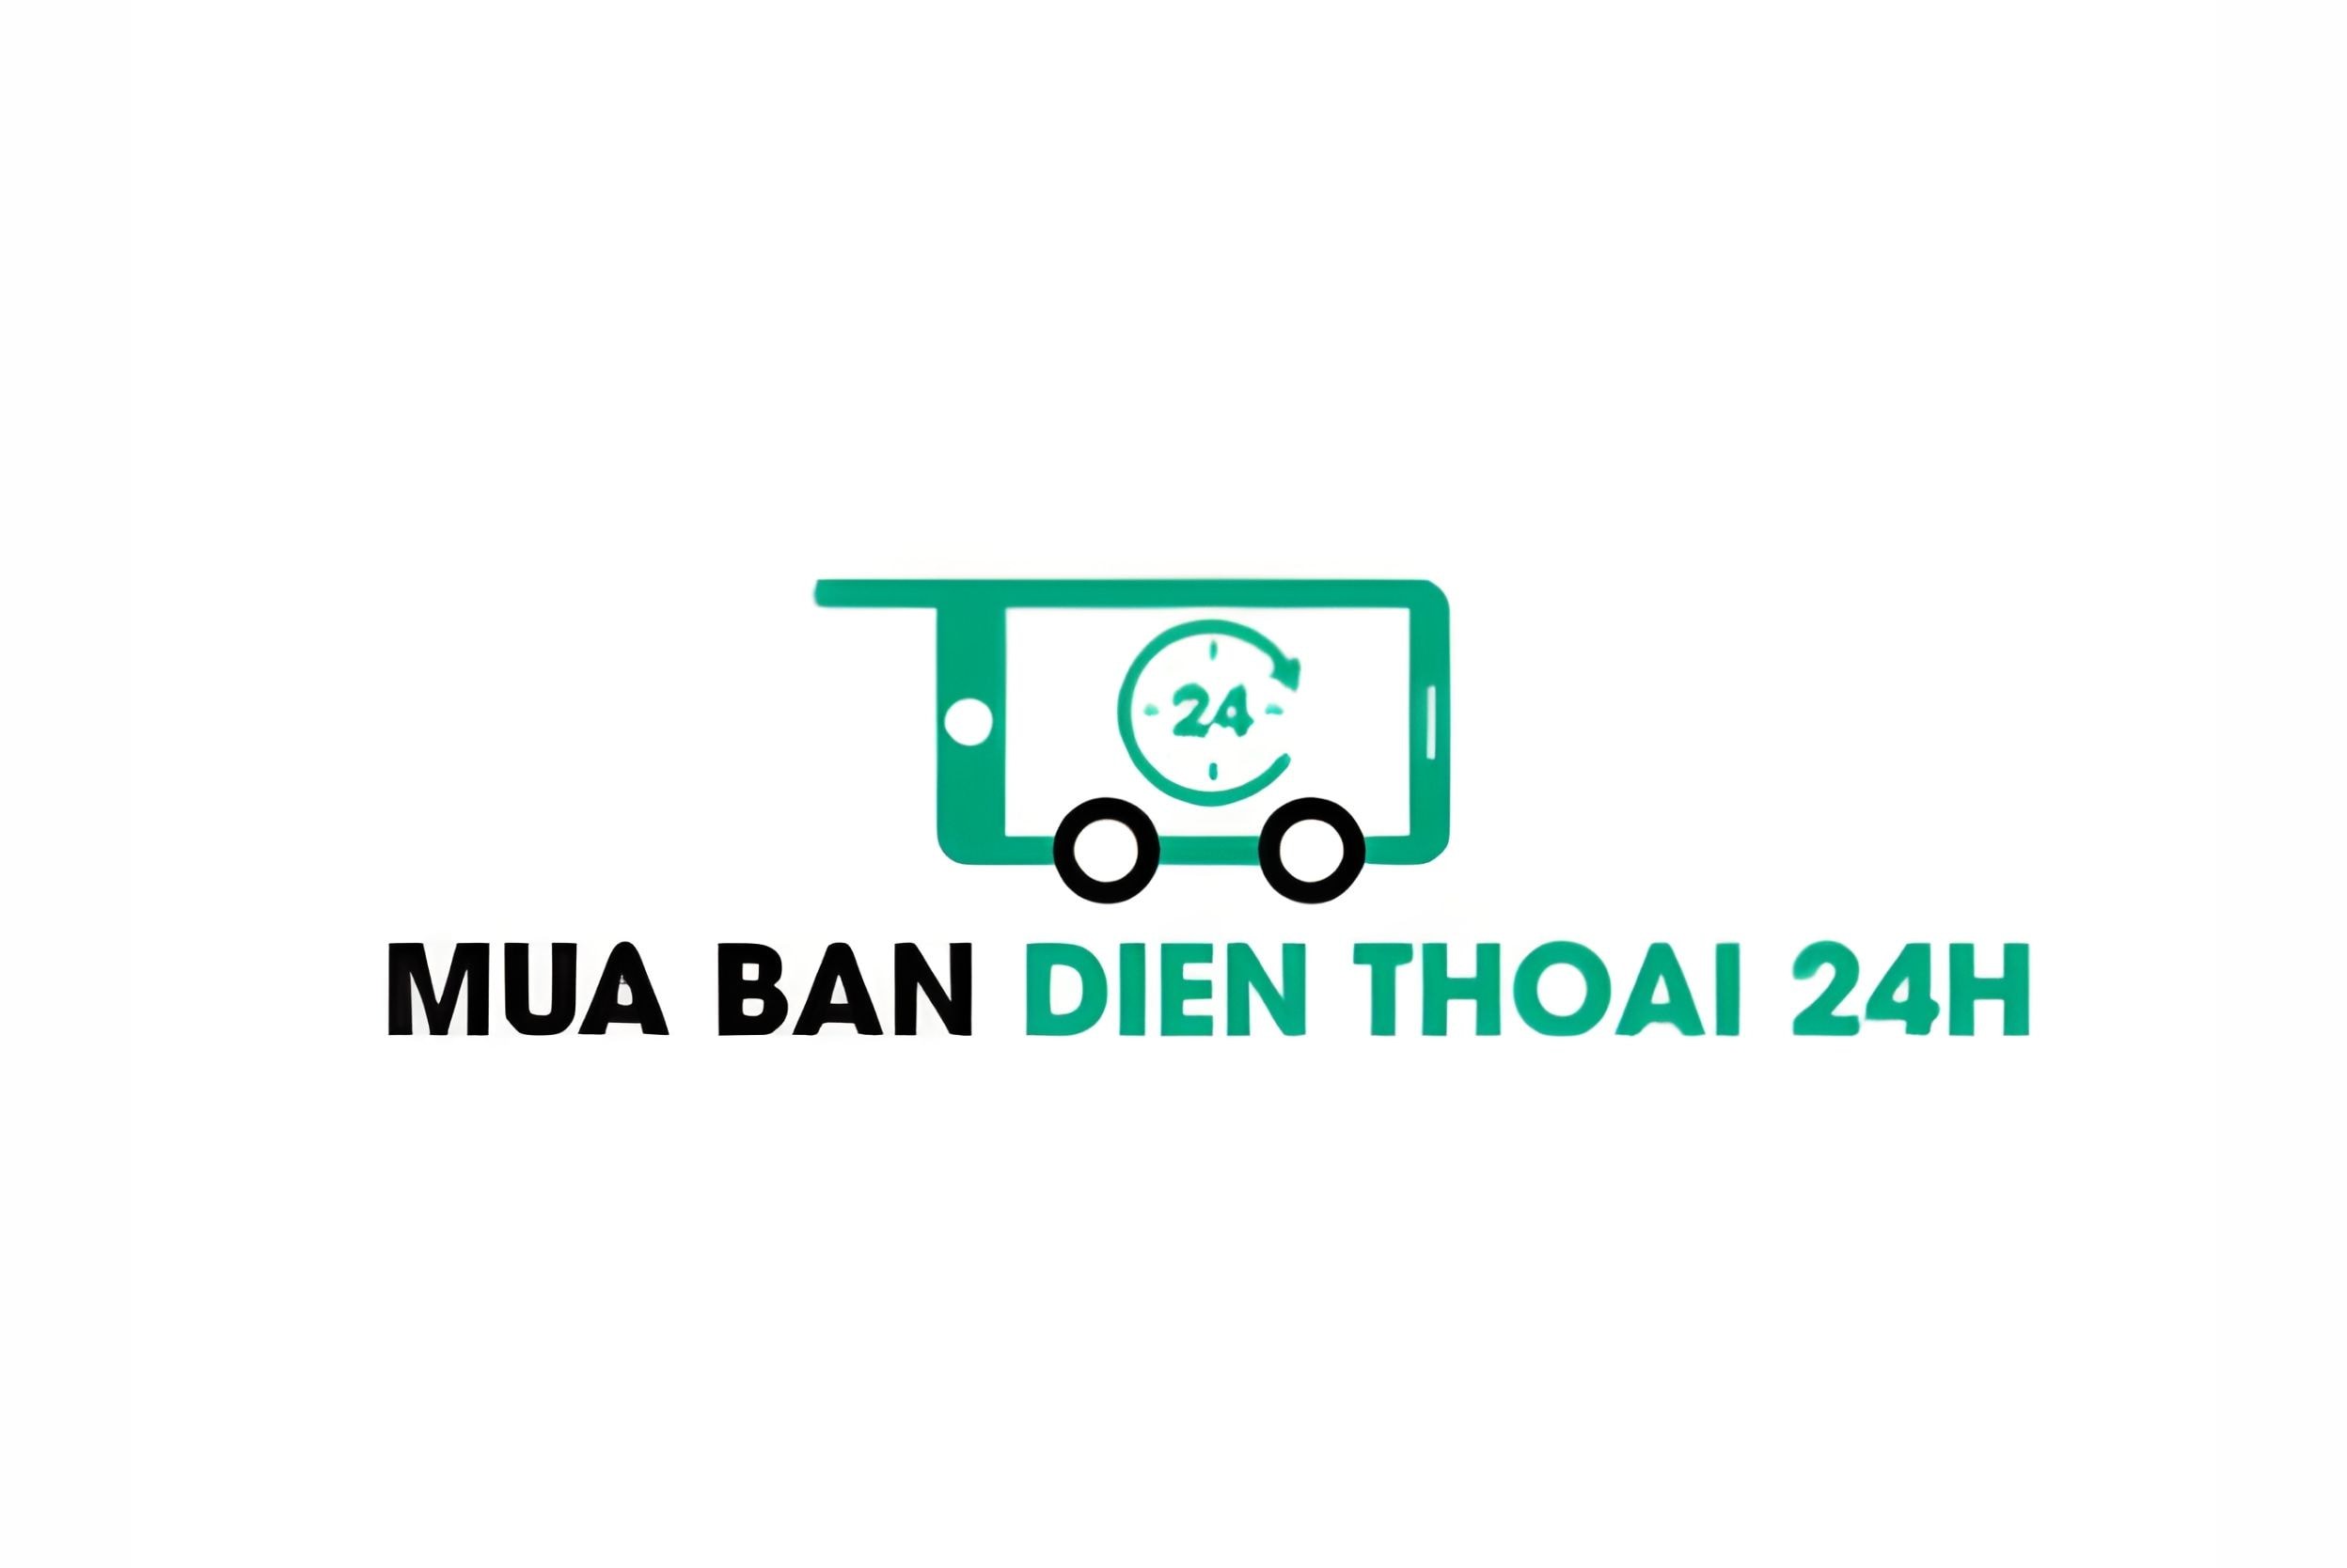 mua-ban-dien-thoai-24h-logo